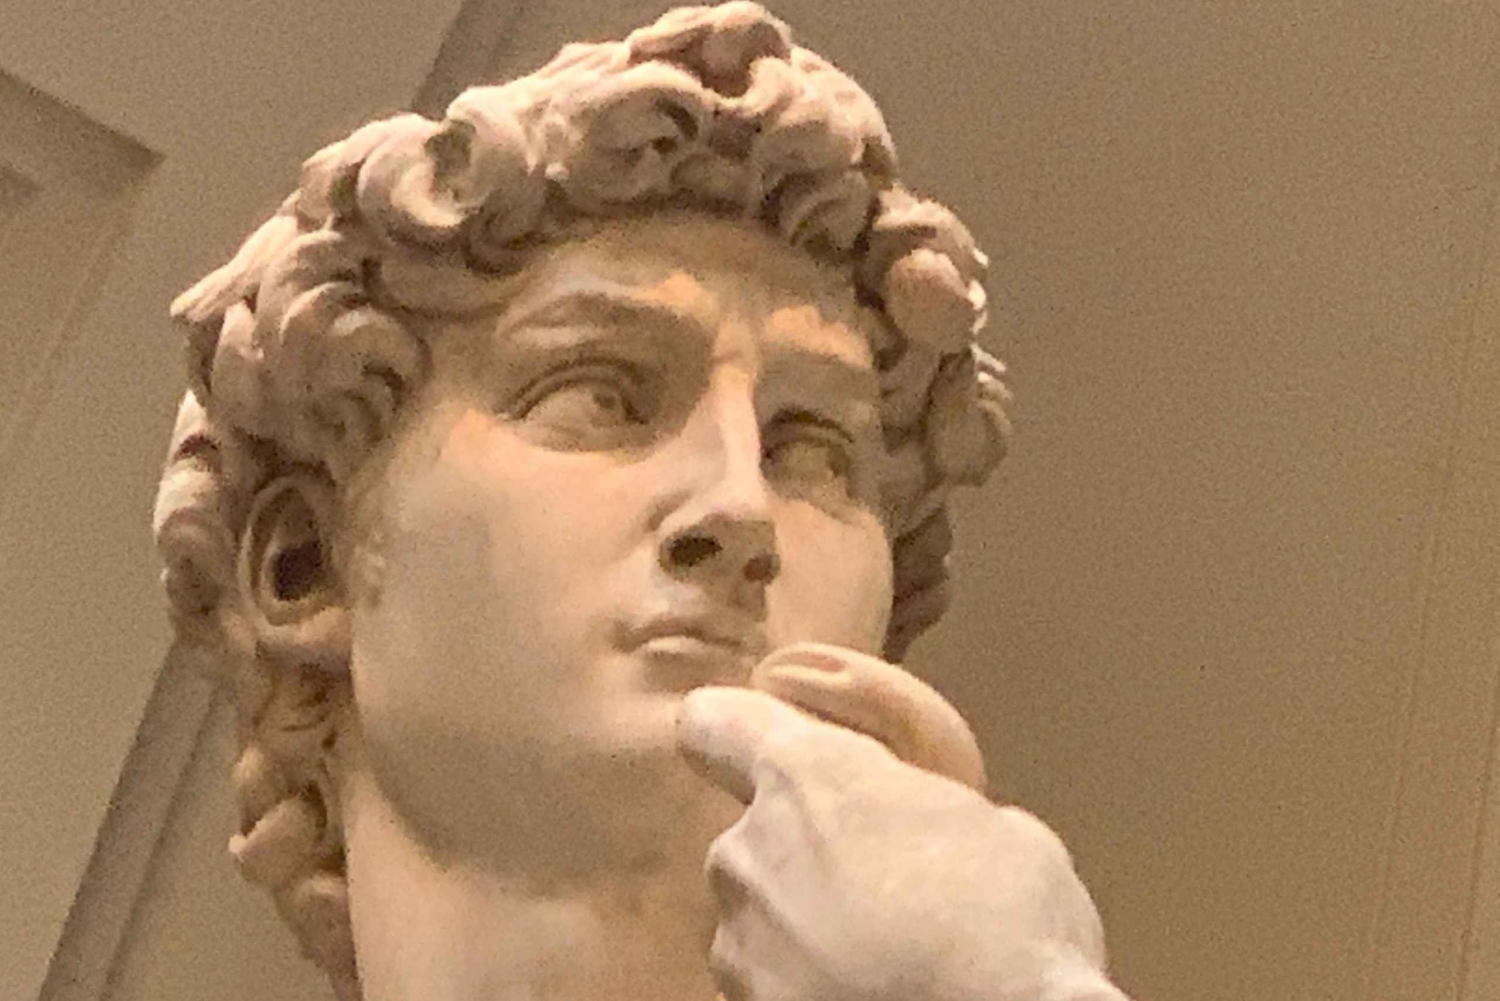 Florencja: Accademia Wycieczka z przewodnikiem z Dawidem Michała Anioła